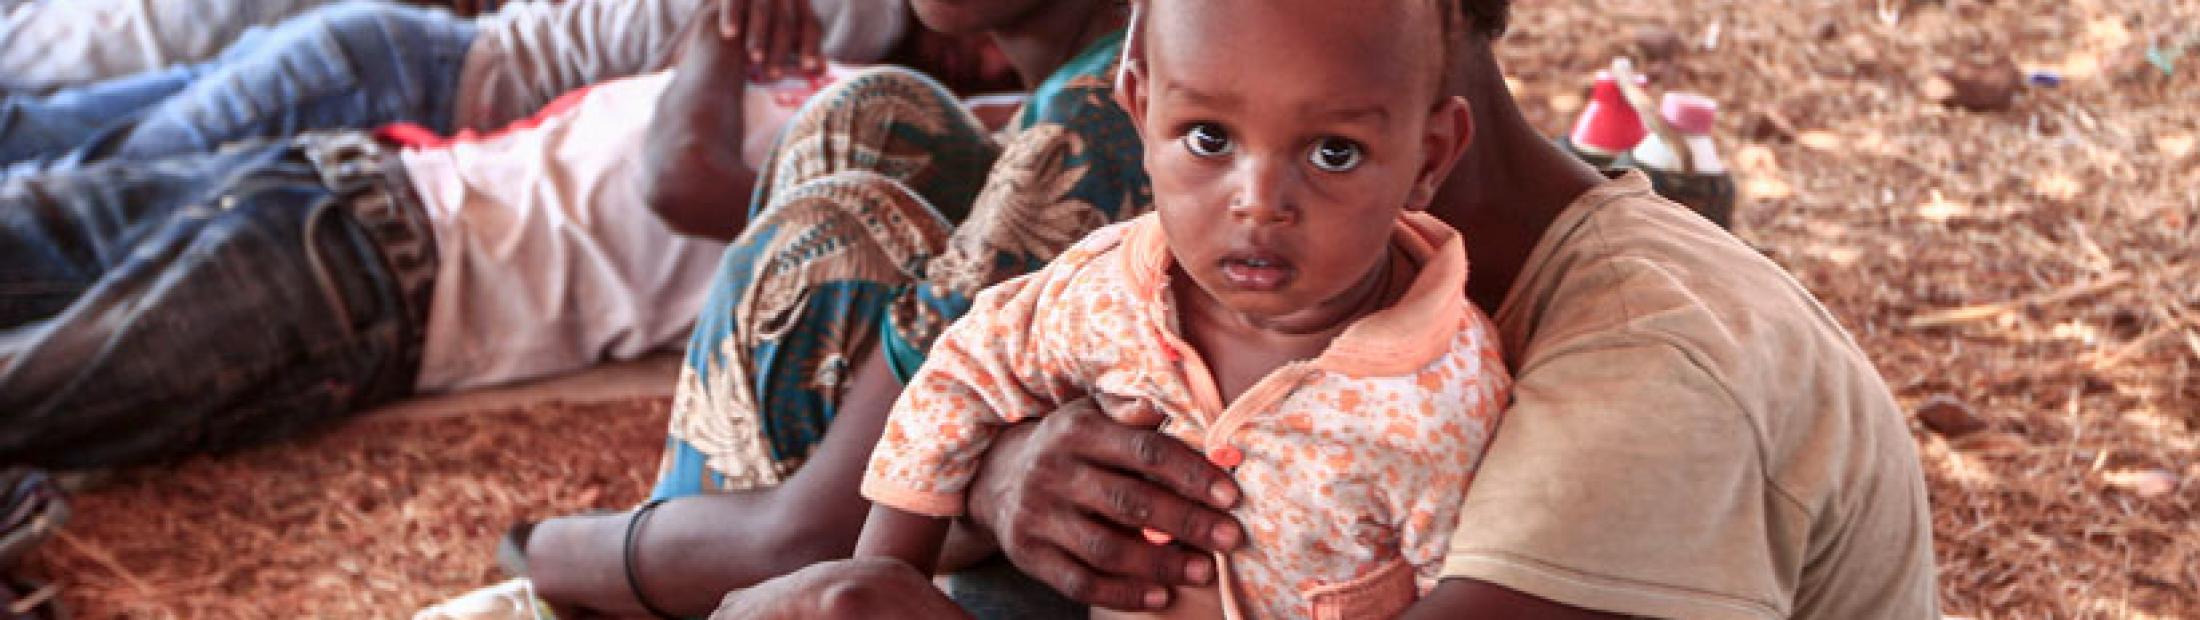 Refugiados de Etiopía y las trabas a la ayuda humanitaria